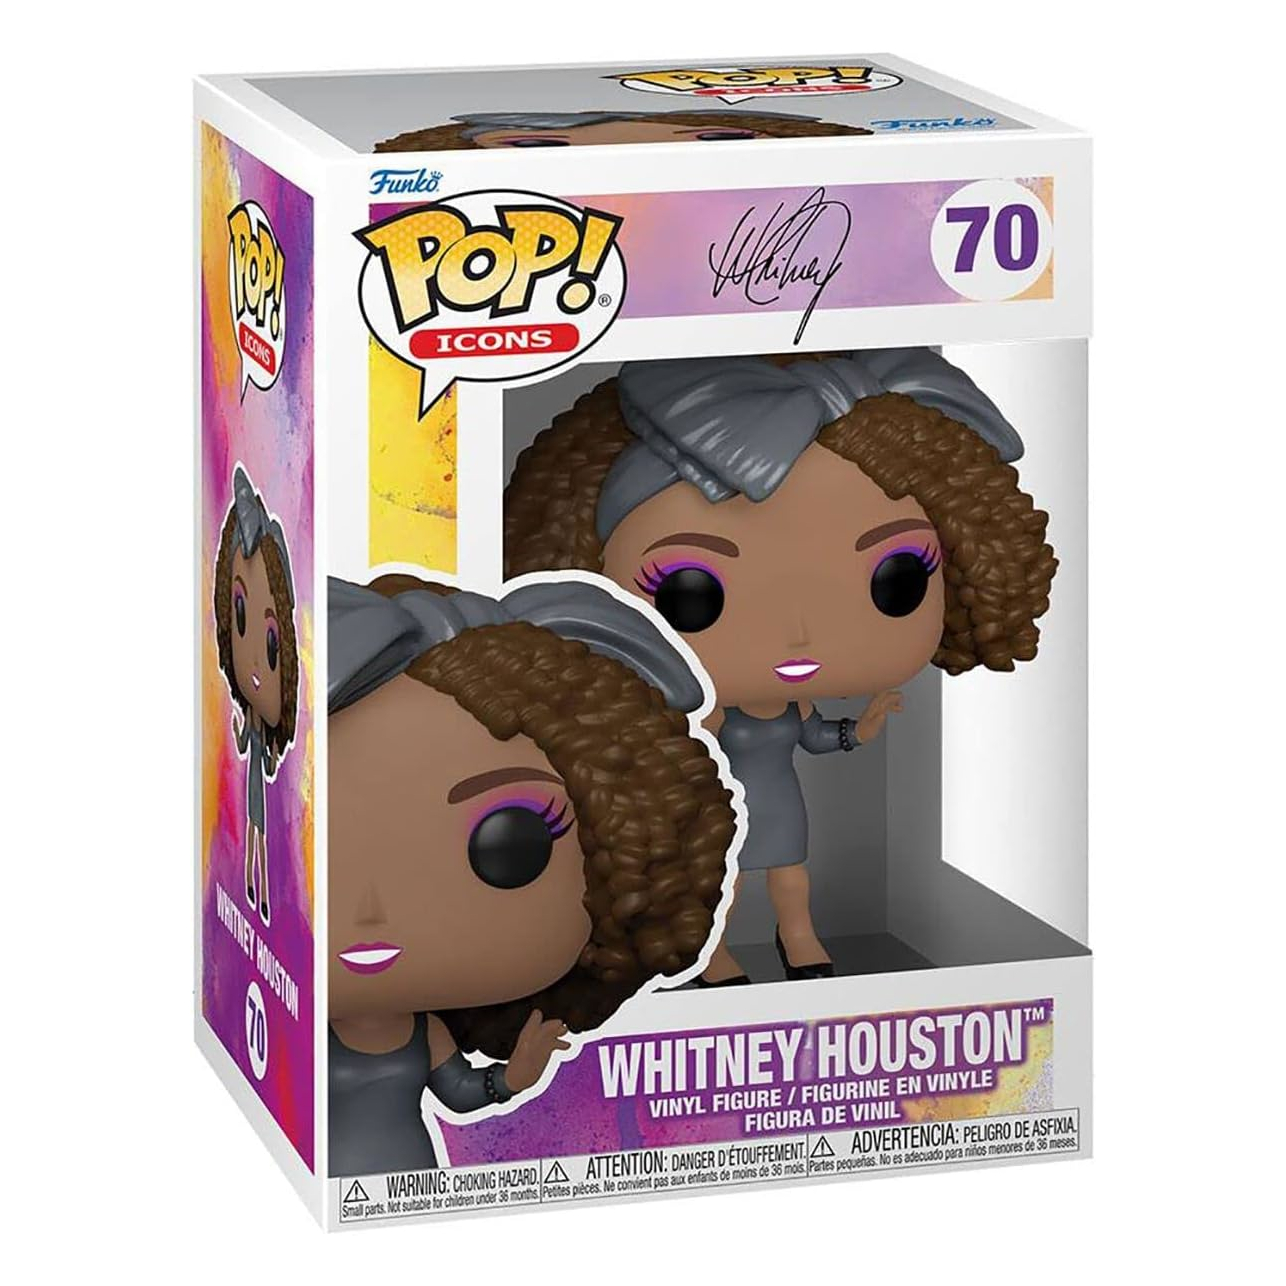 Фигурка Funko Pop! Icons Whitney Houston How Will I Know фигурка funko pop icons whitney houston – how will i know diamond glitter exclusive 9 5 см